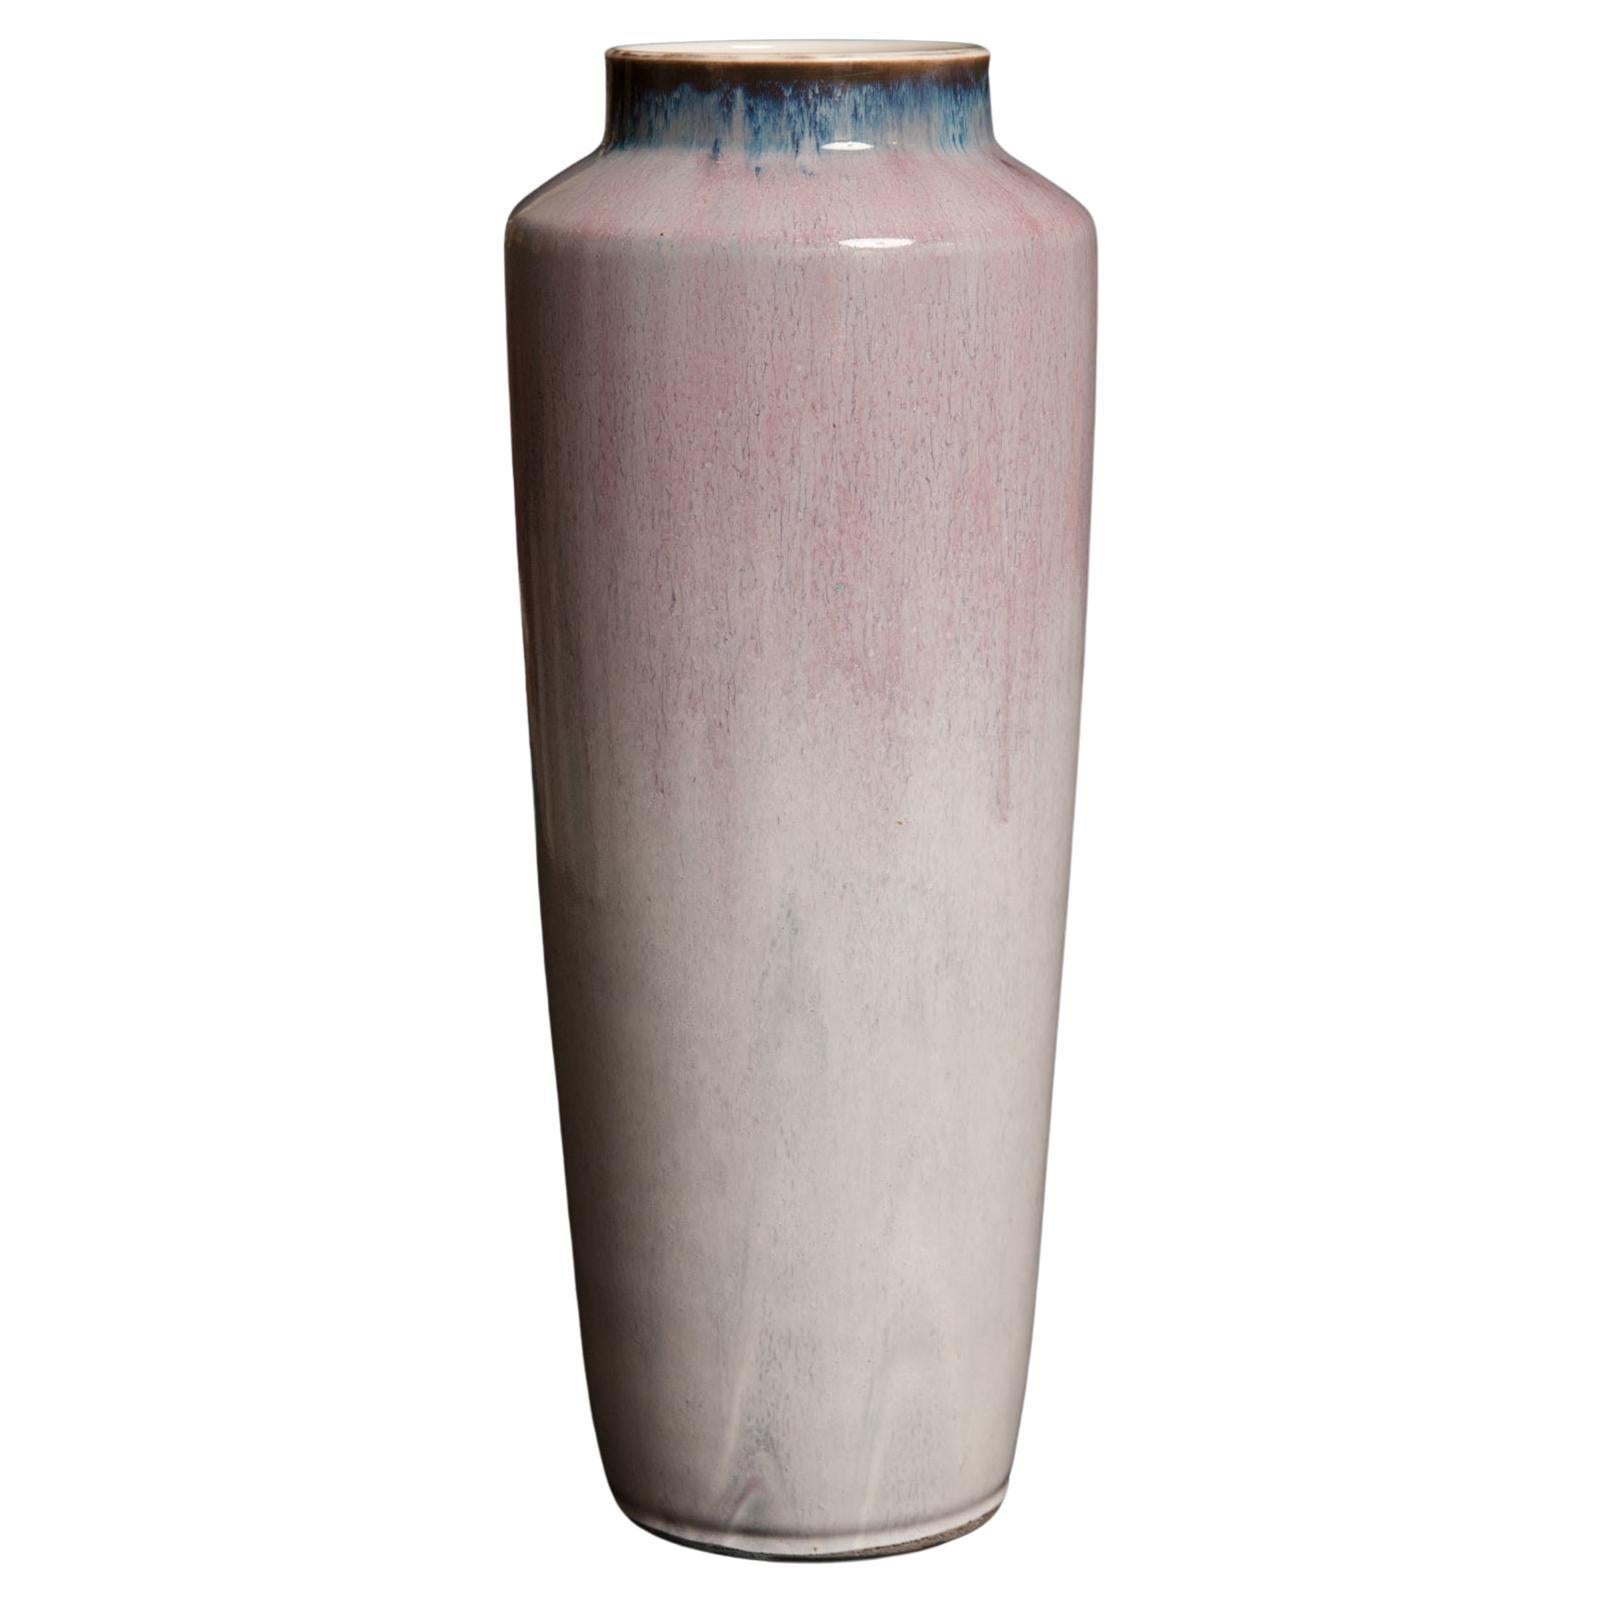 Art Nouveau Porcelain Vase by Taxile Doat for Manufacture Nationale de Sèvres For Sale